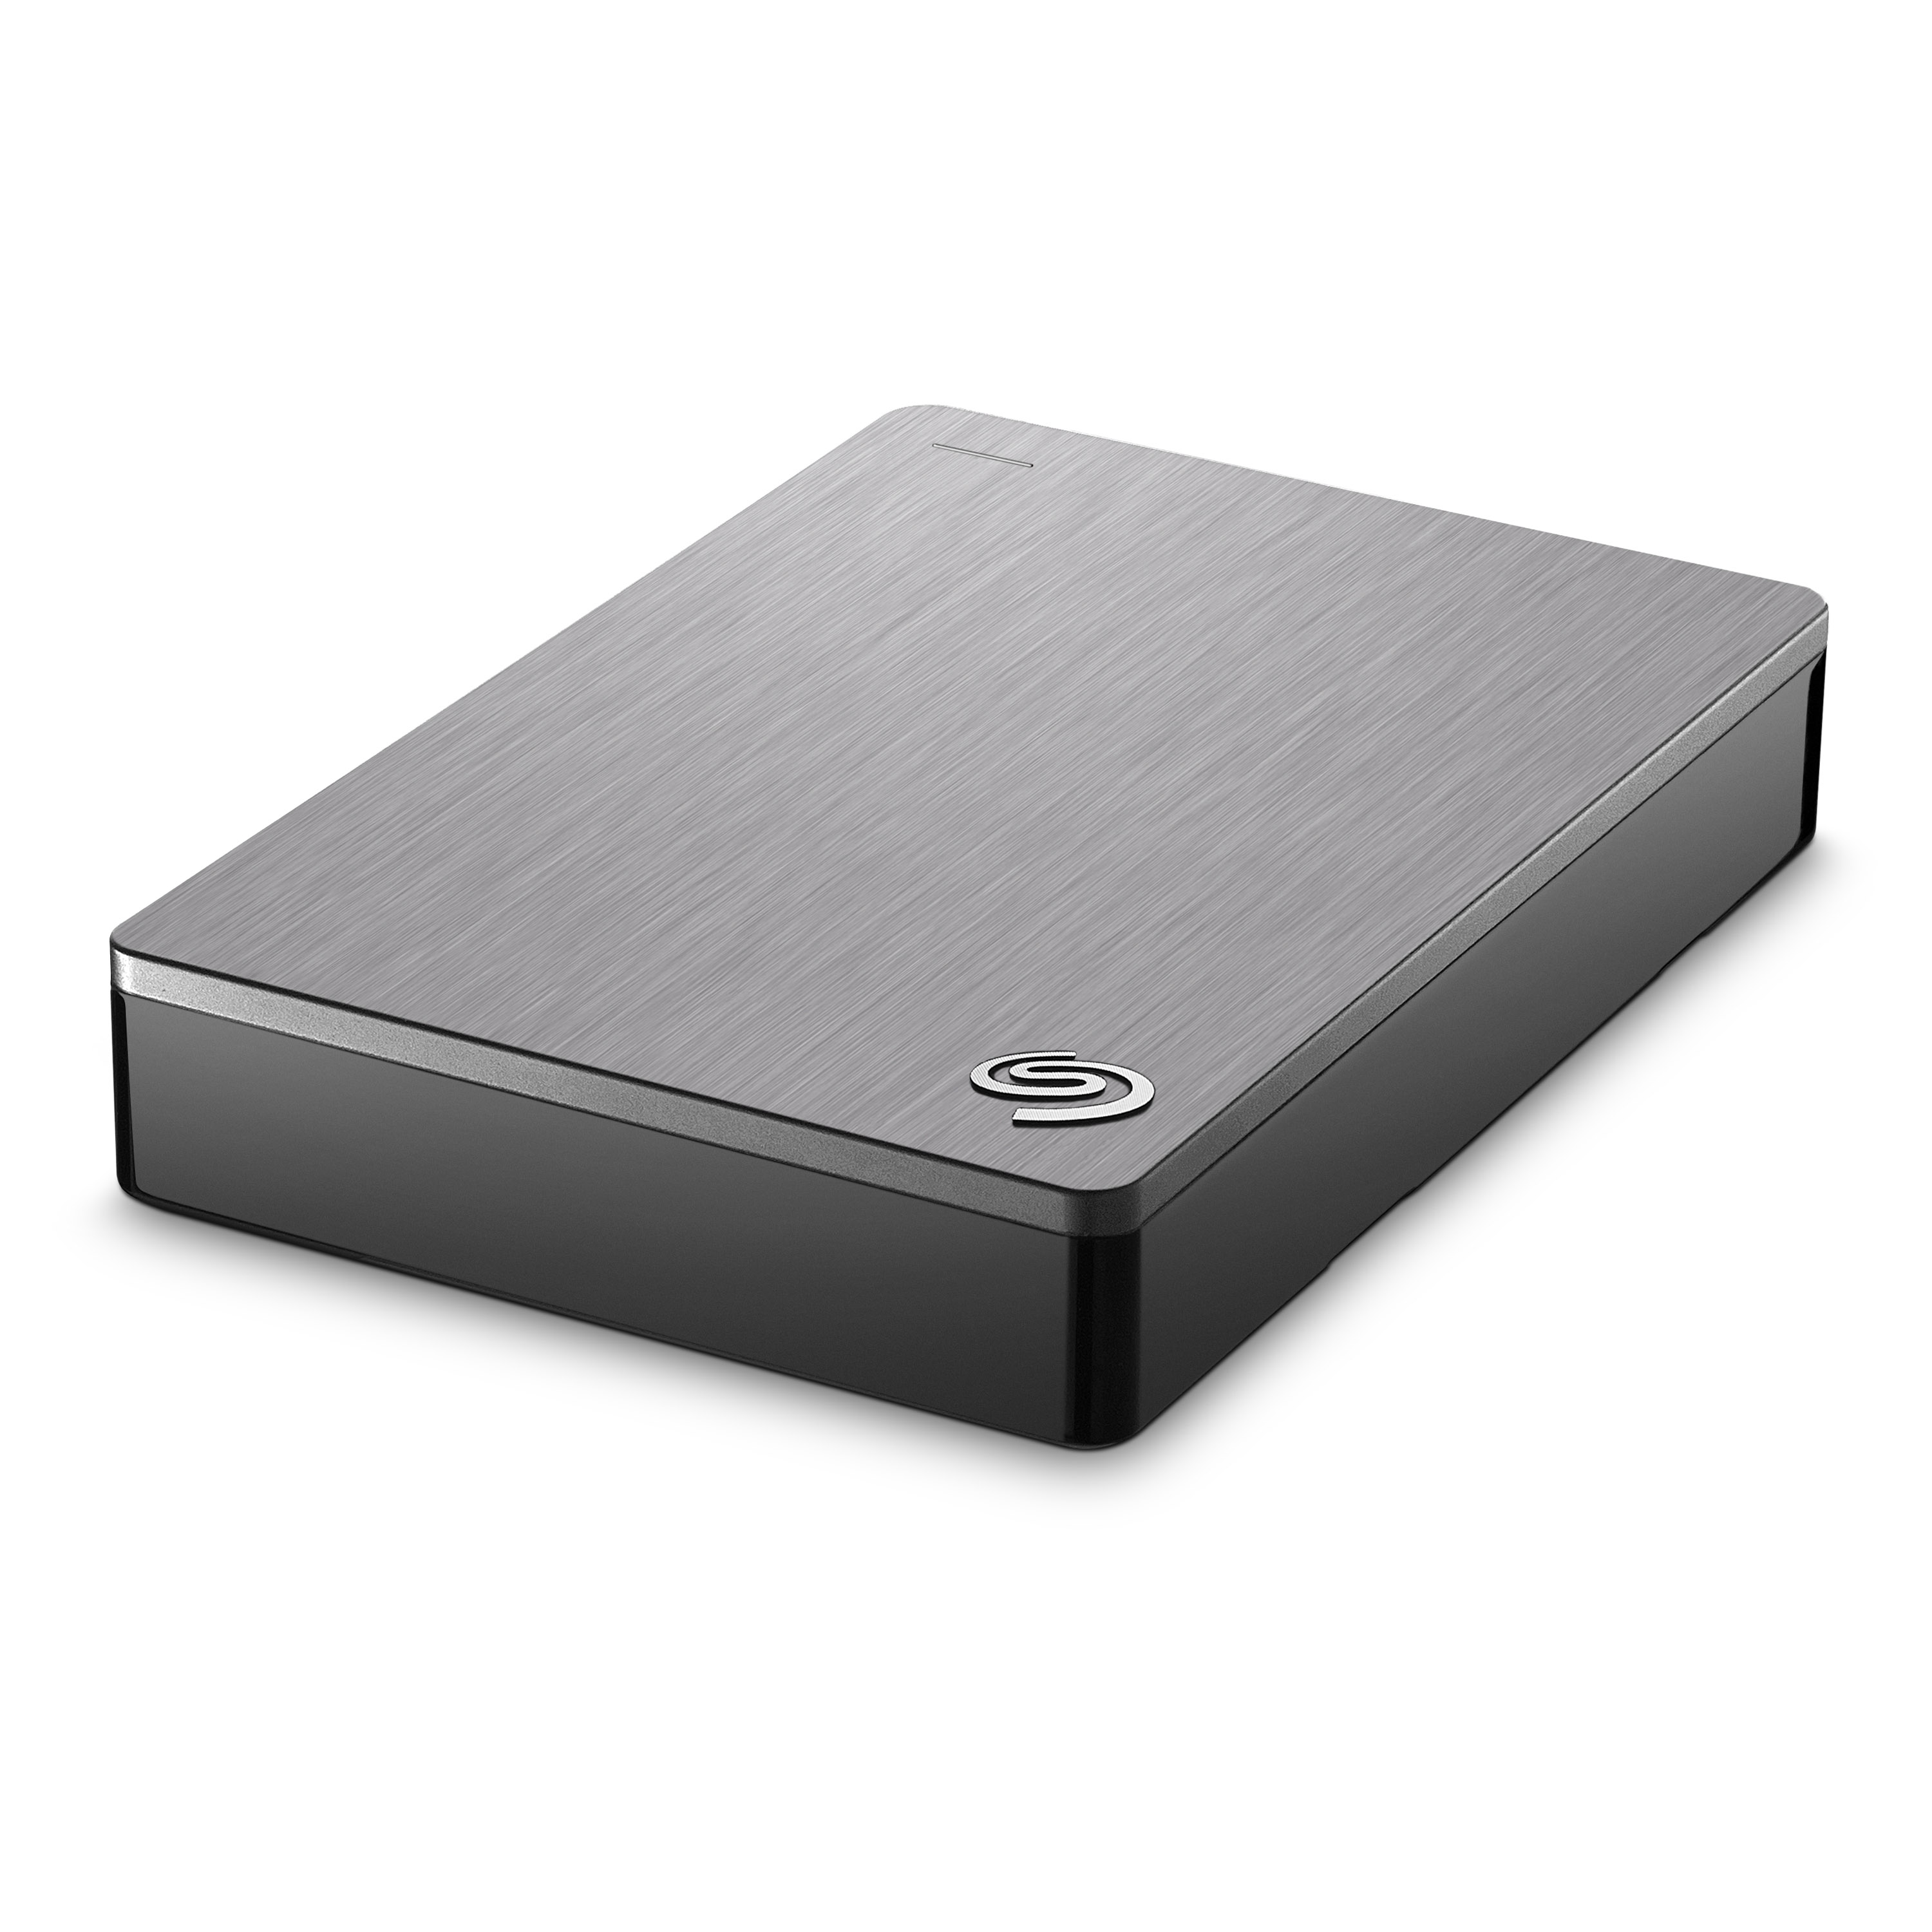 希捷(Seagate) Backup Plus睿品 4TB 2.5英寸USB3.0移动硬盘 STDR4000301 银色高清大图